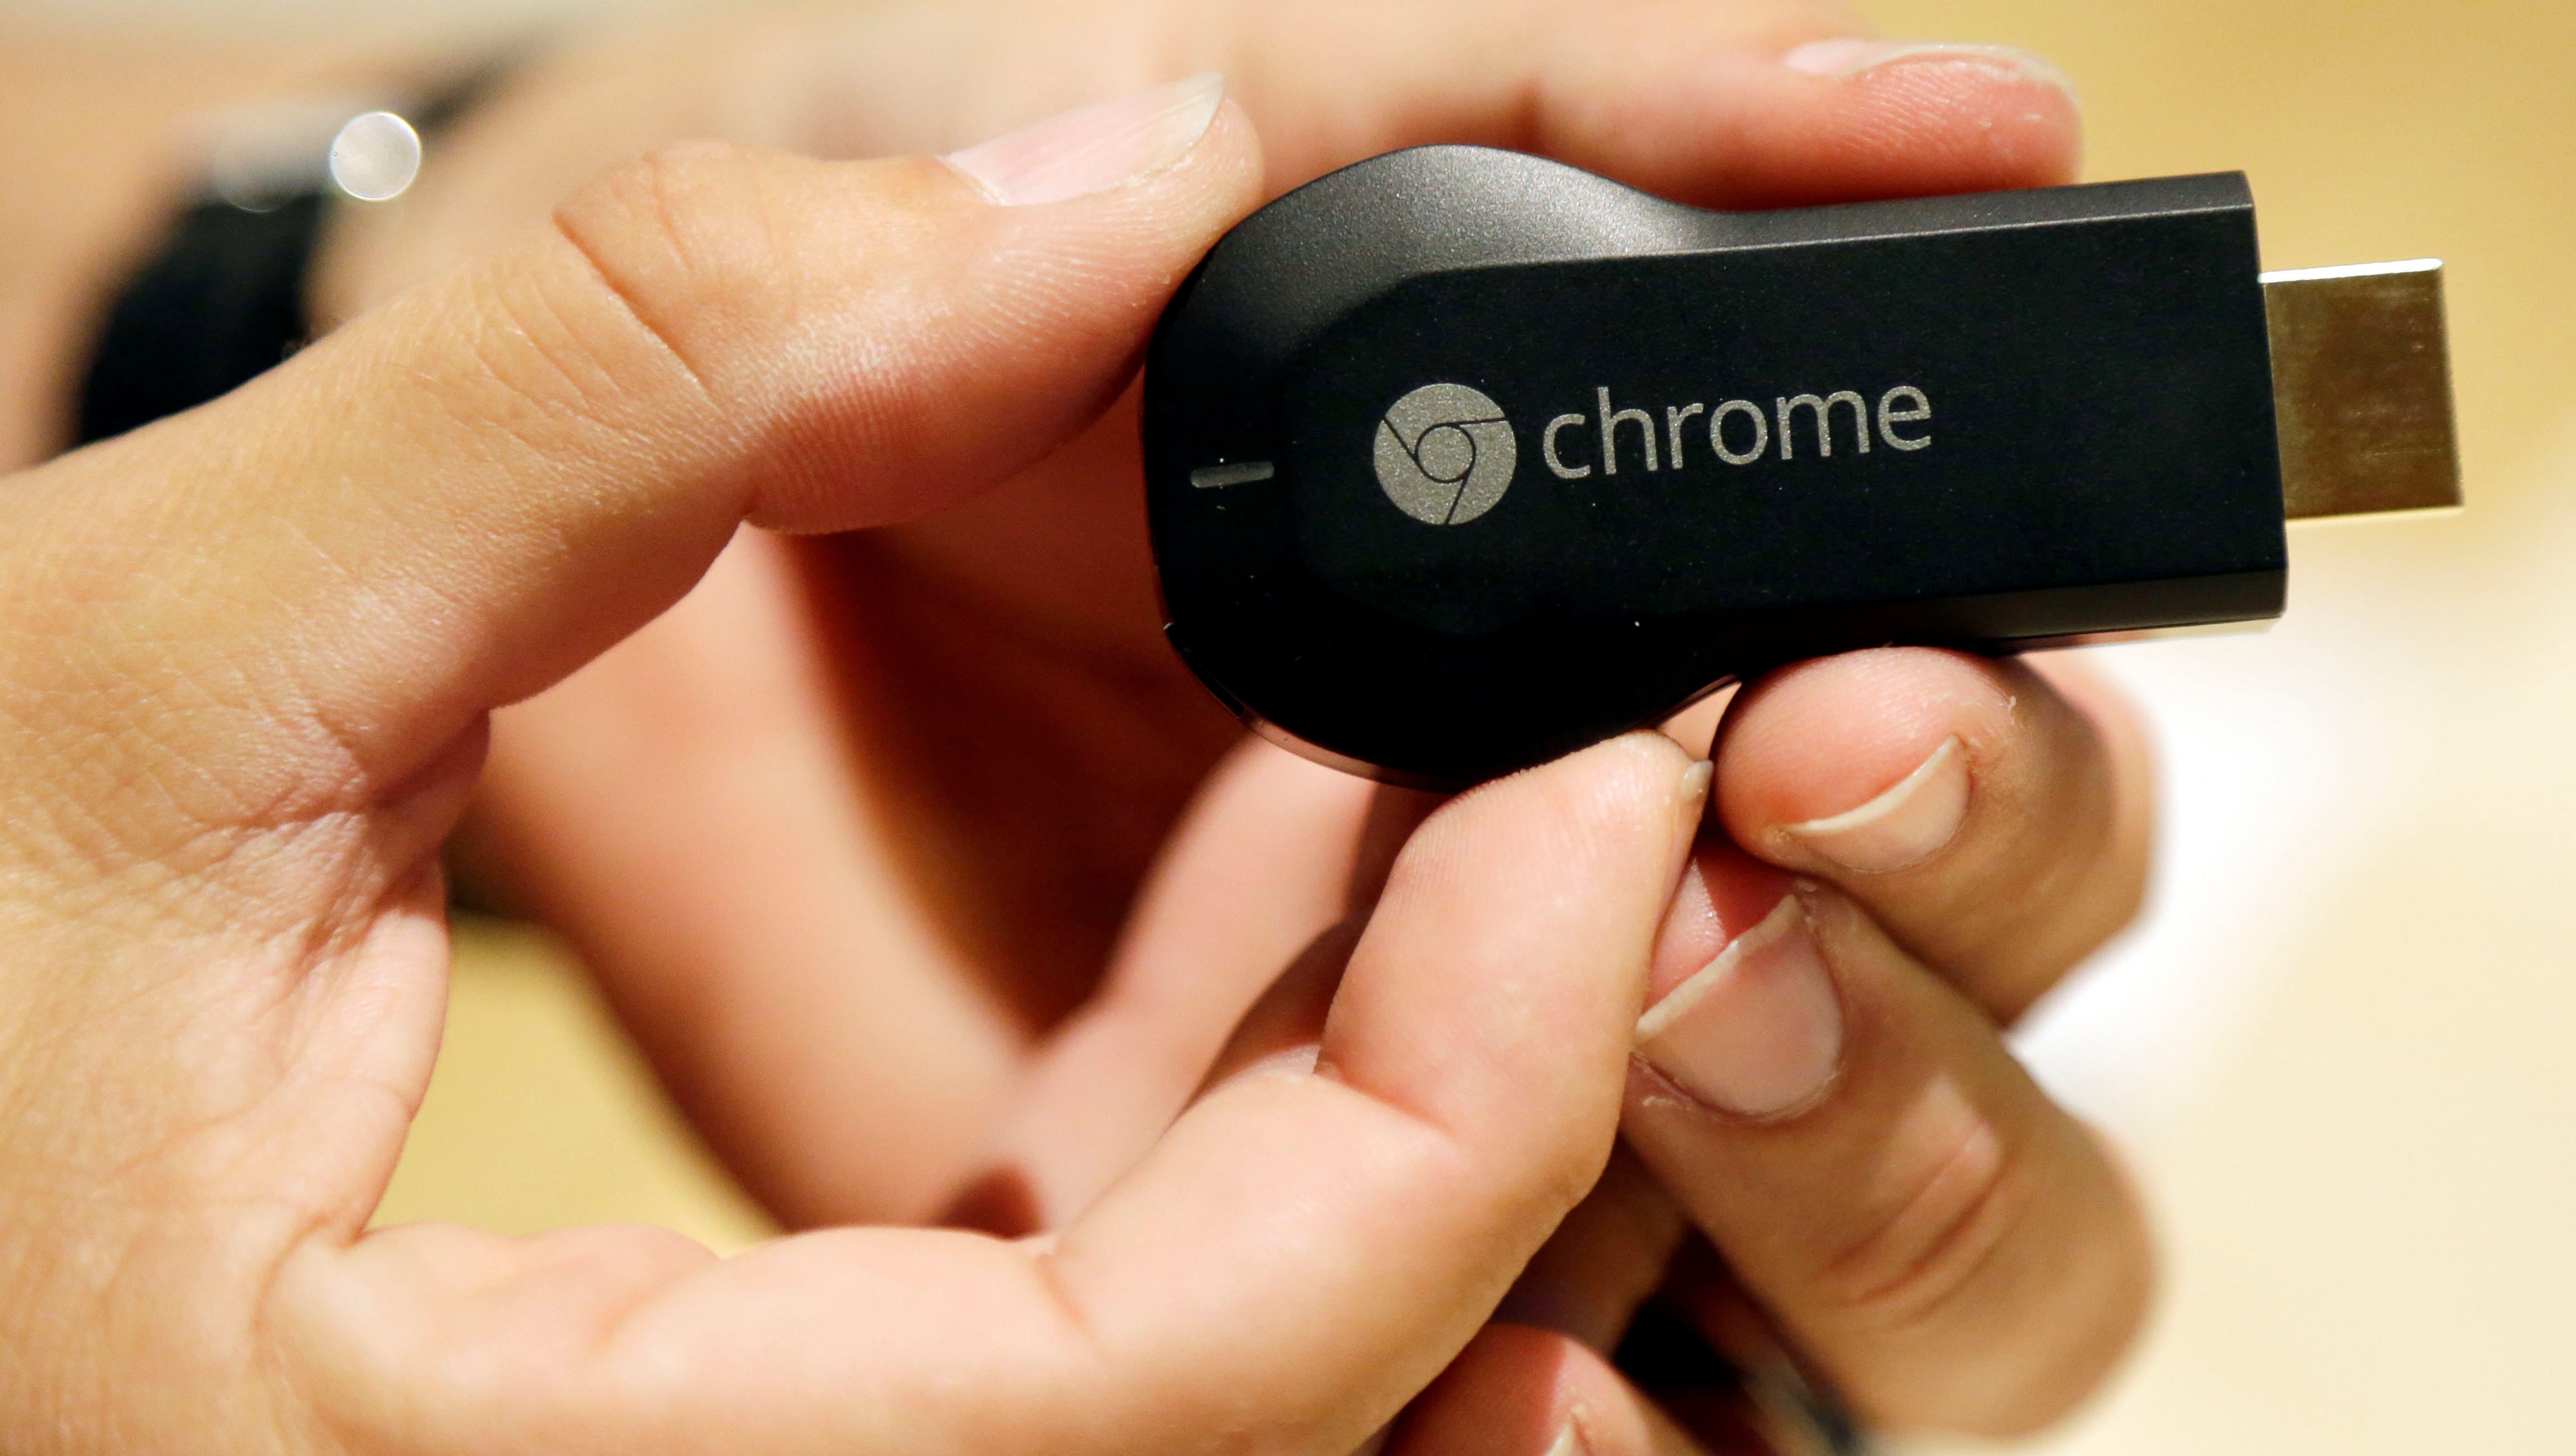 Google's Chromecast your TV smarter